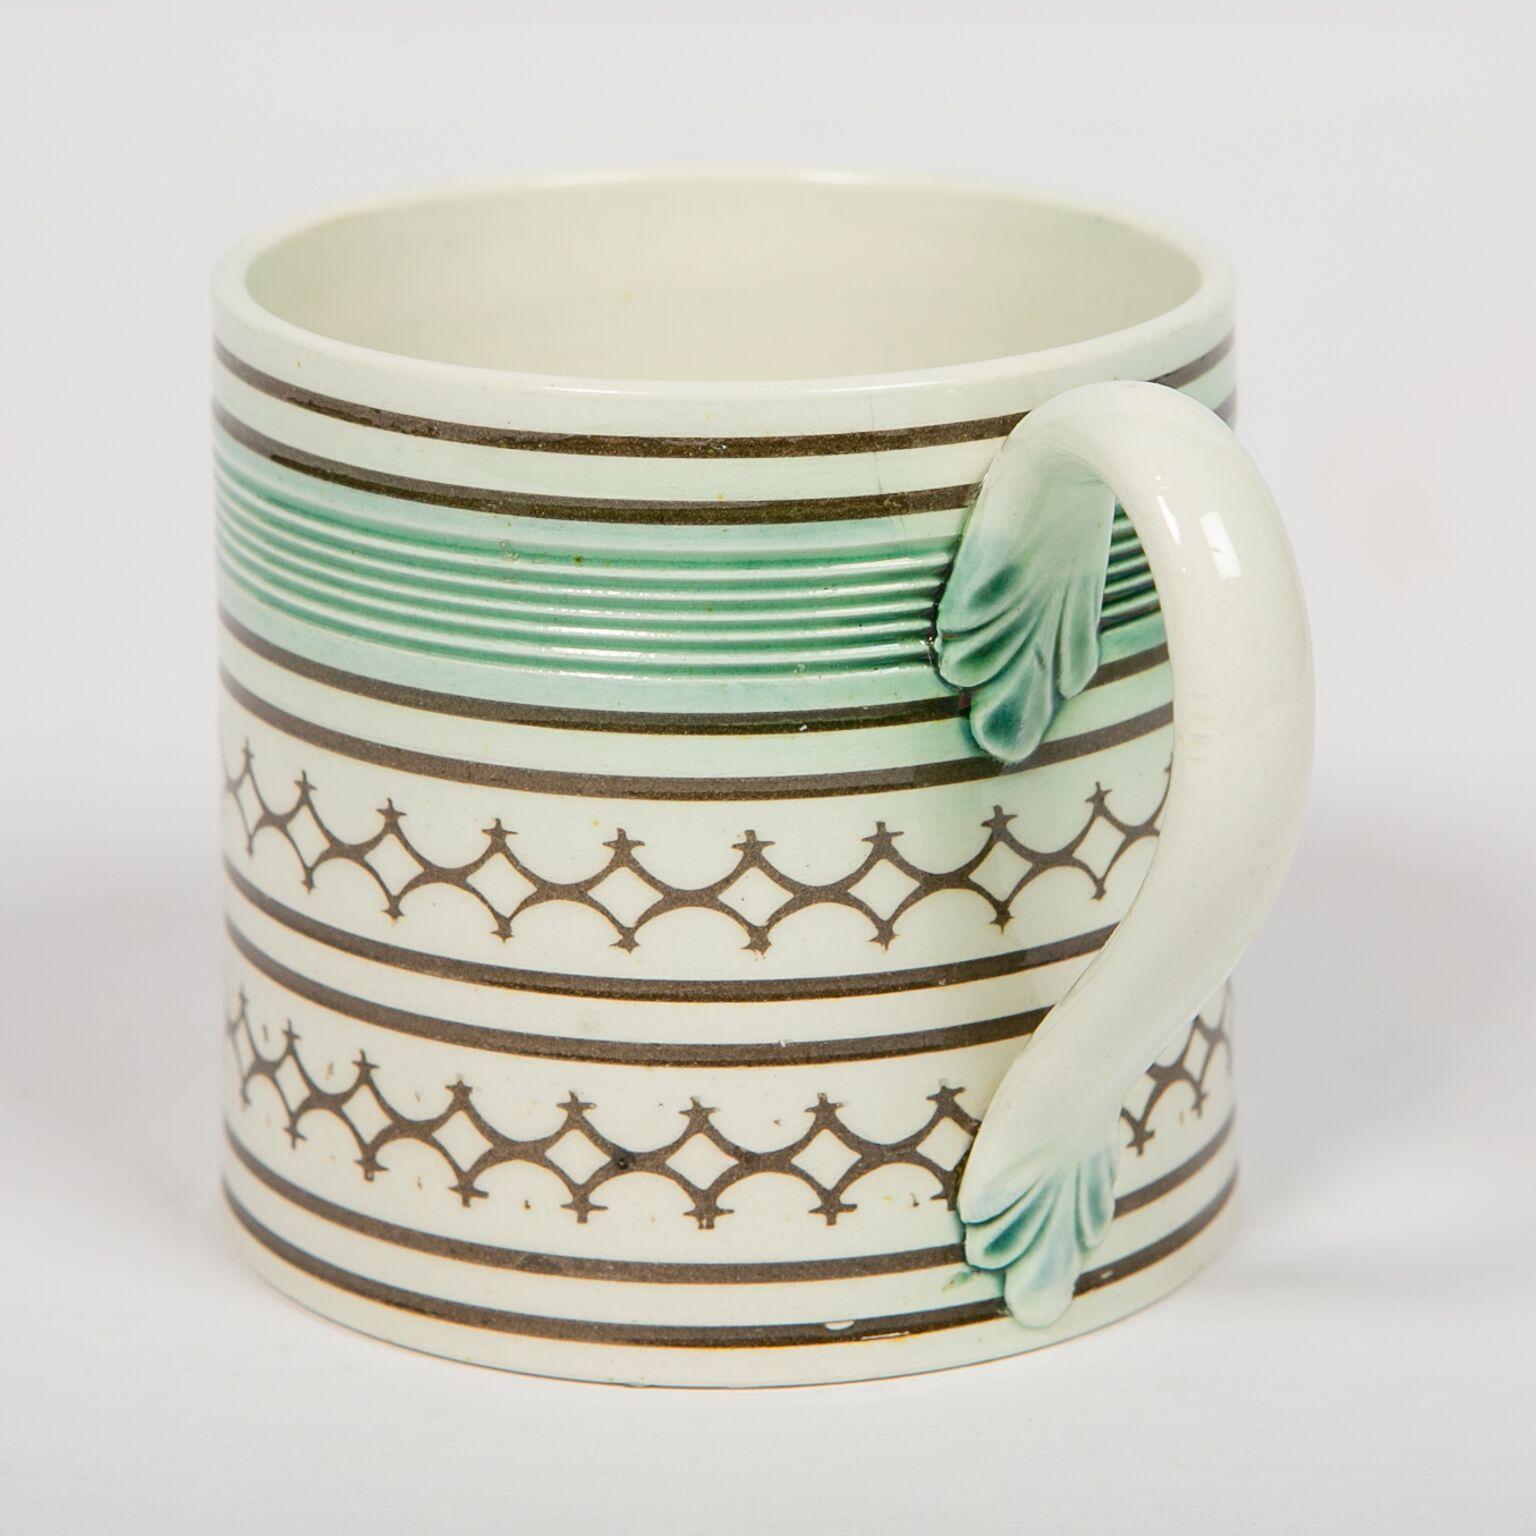 Earthenware Small Mochaware Mug England, circa 1820